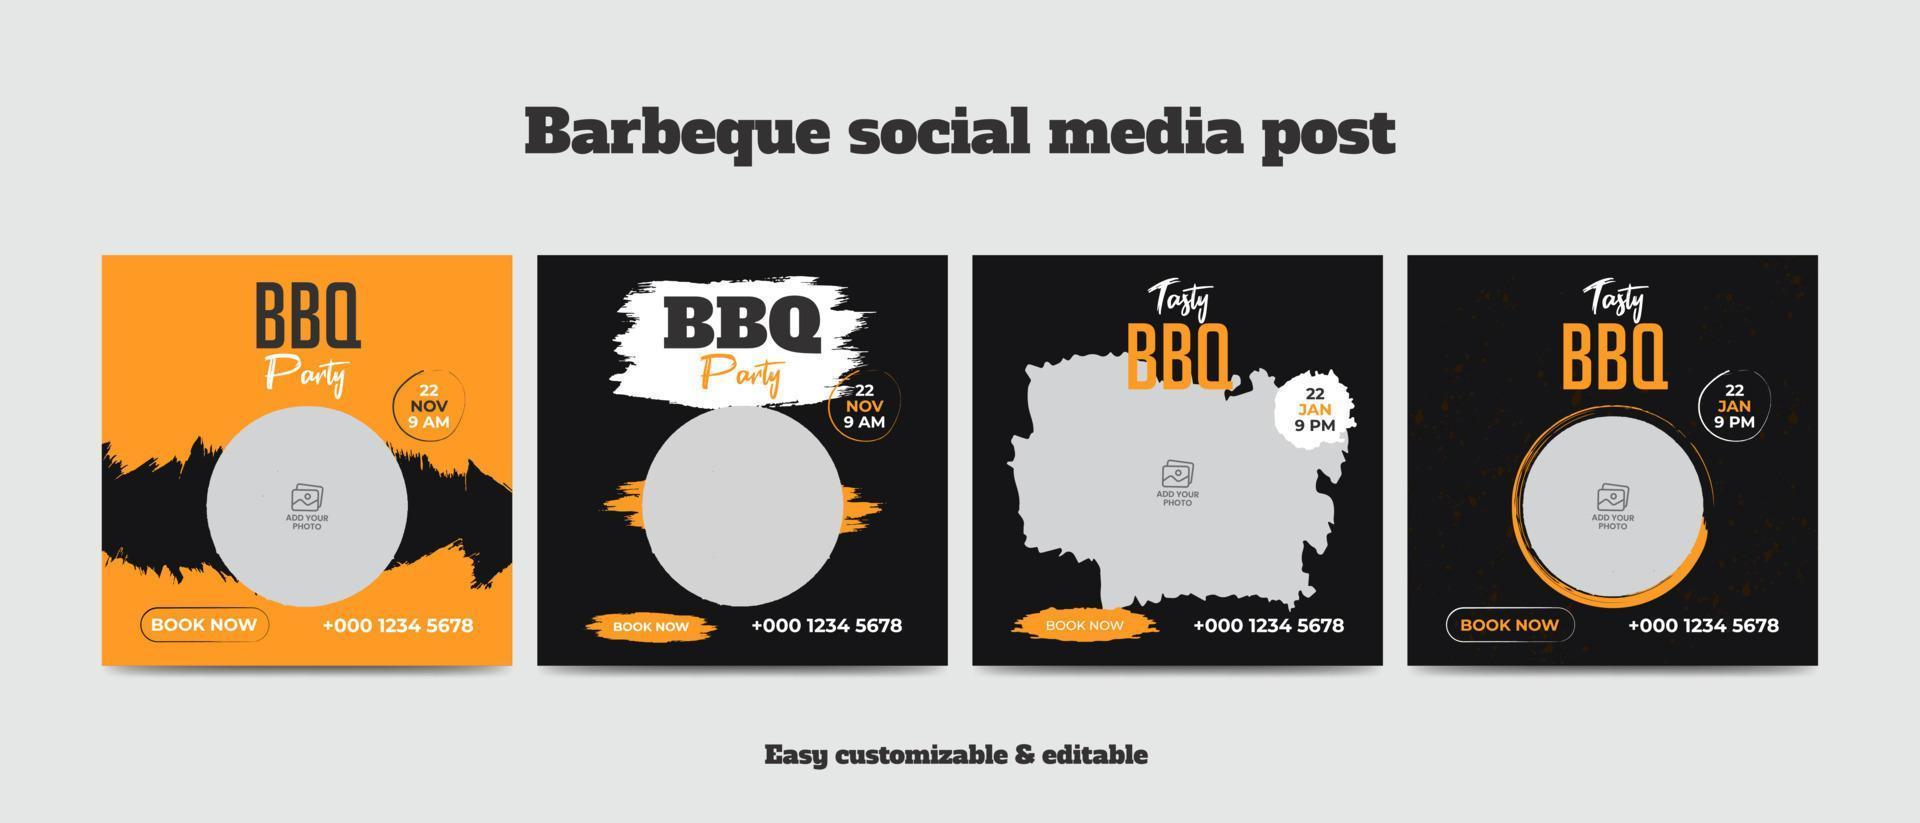 barbeque sociale media inviare modello delizioso griglia bbq cibo sociale media ragnatela bandiera vettore